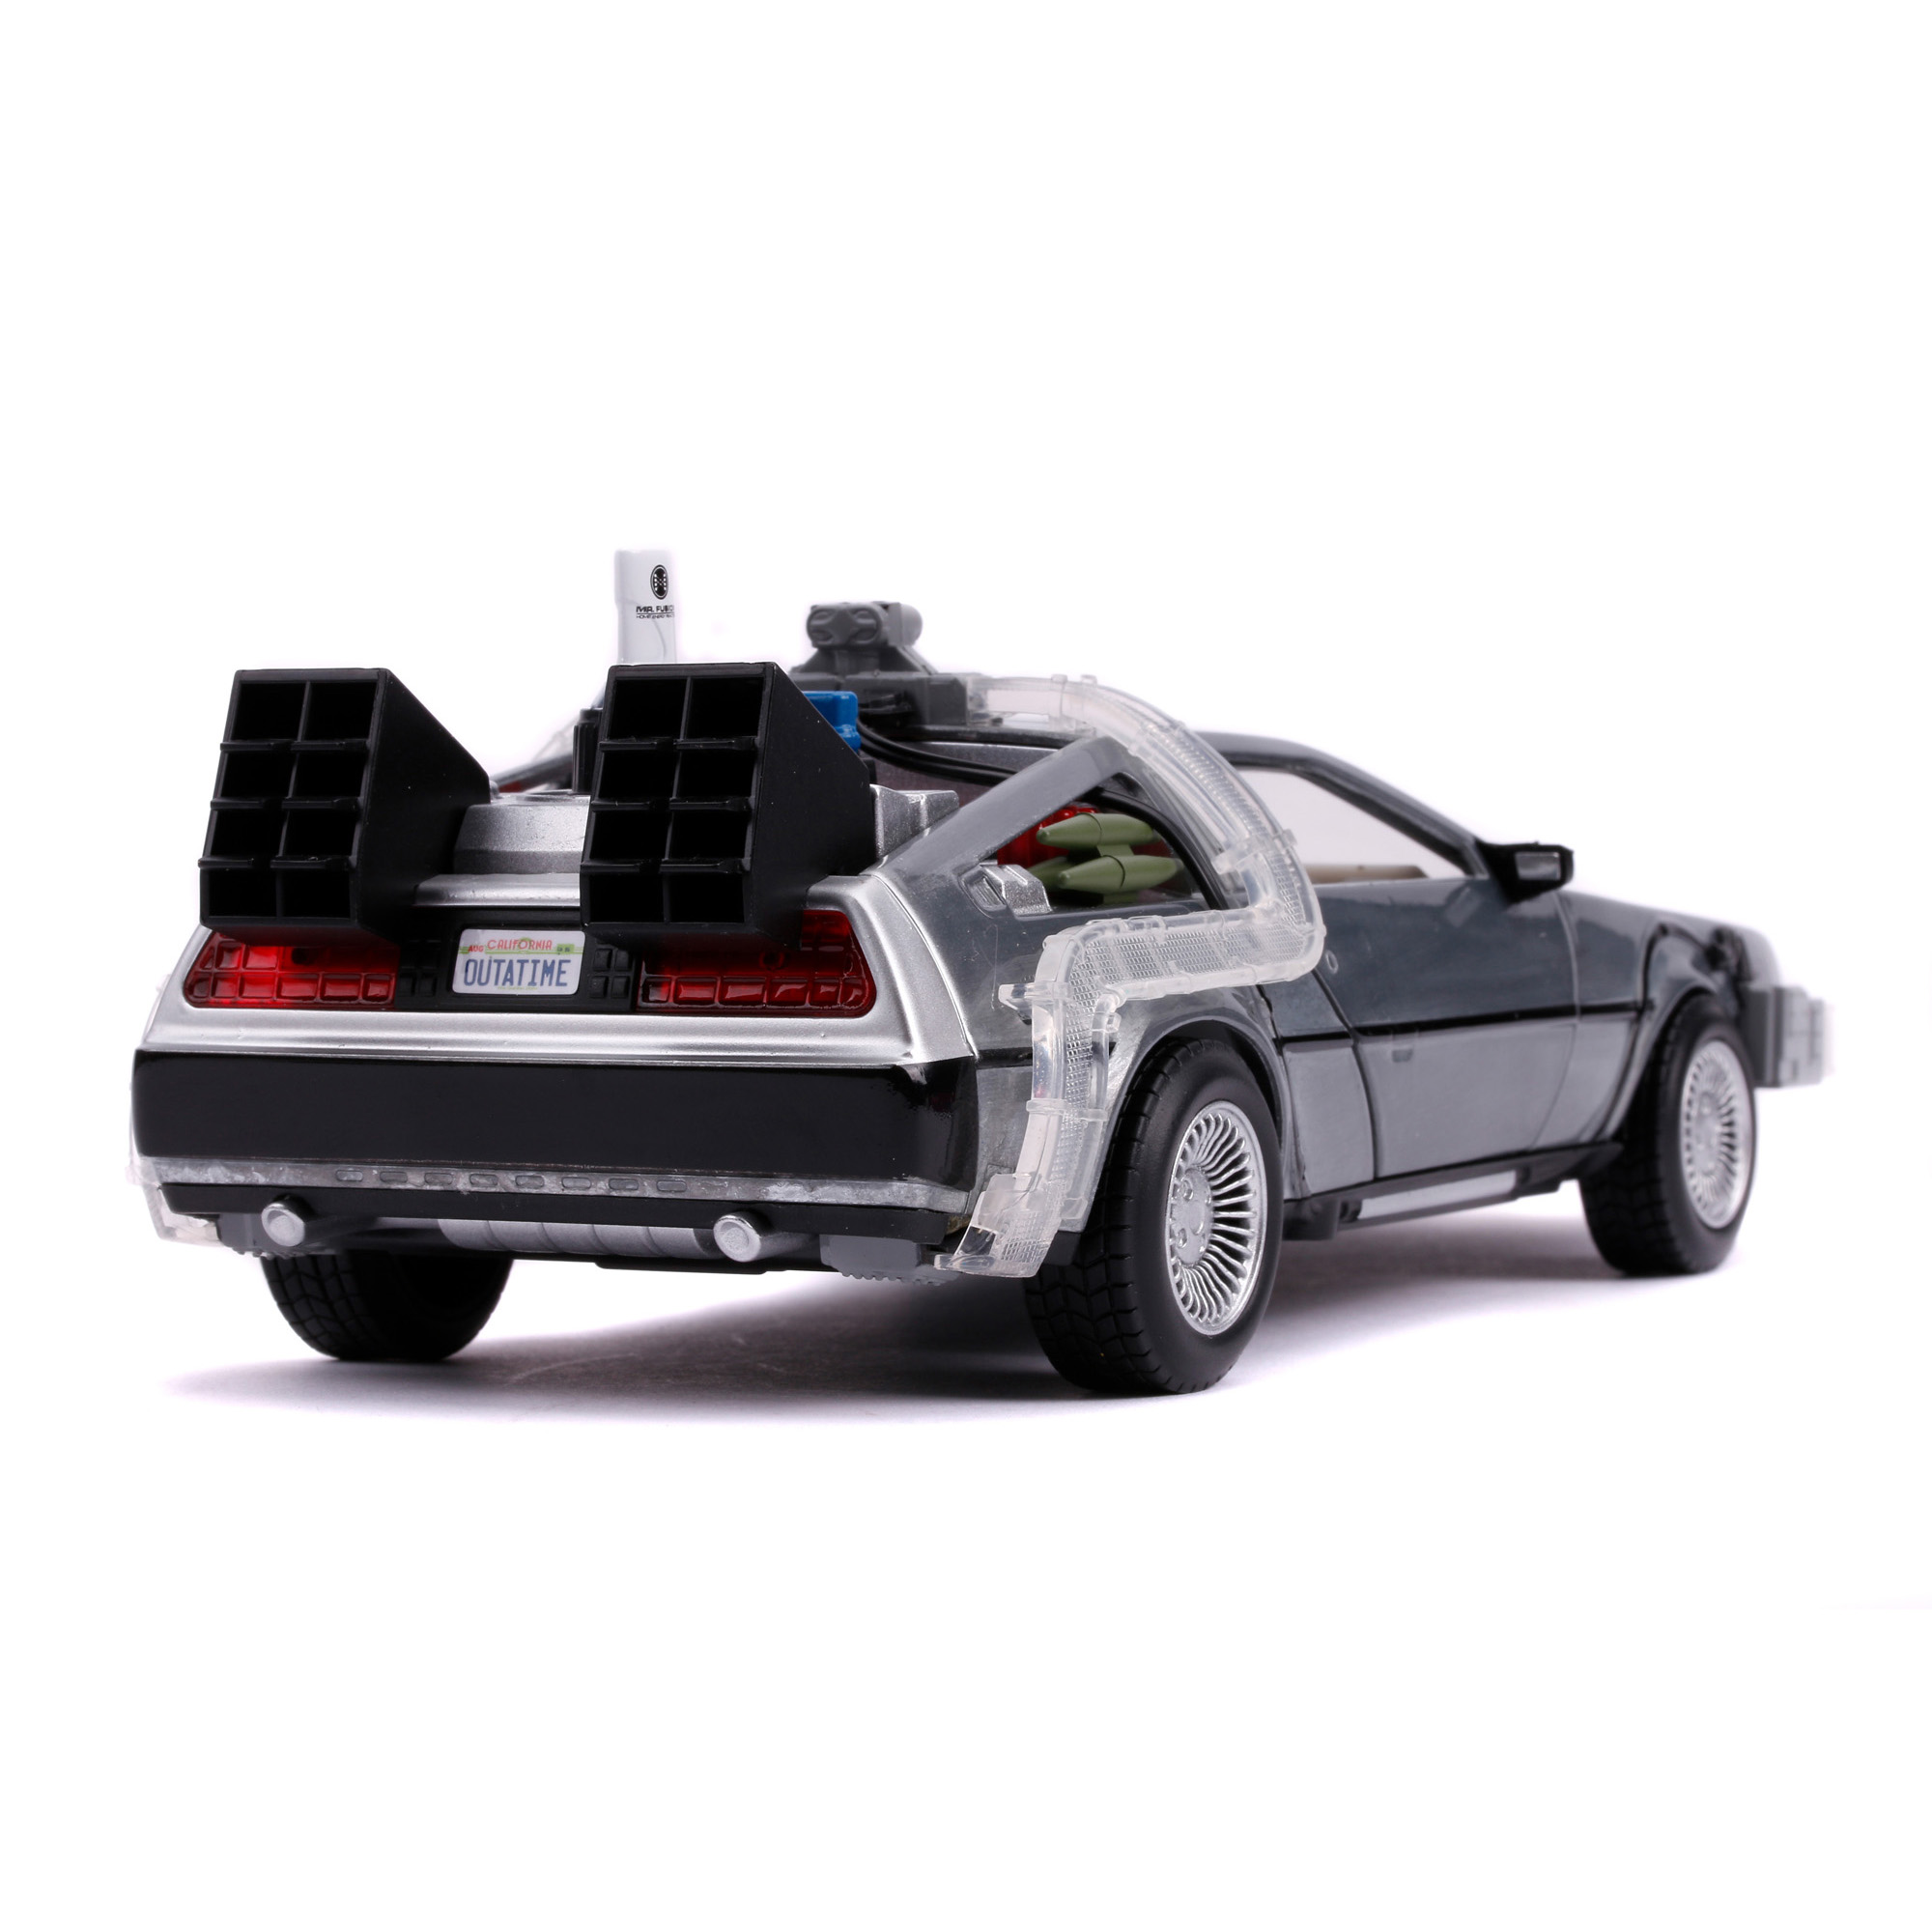 DeLorean (Ritorno al Futuro 2) Time Machine scala 1:24 - Jada